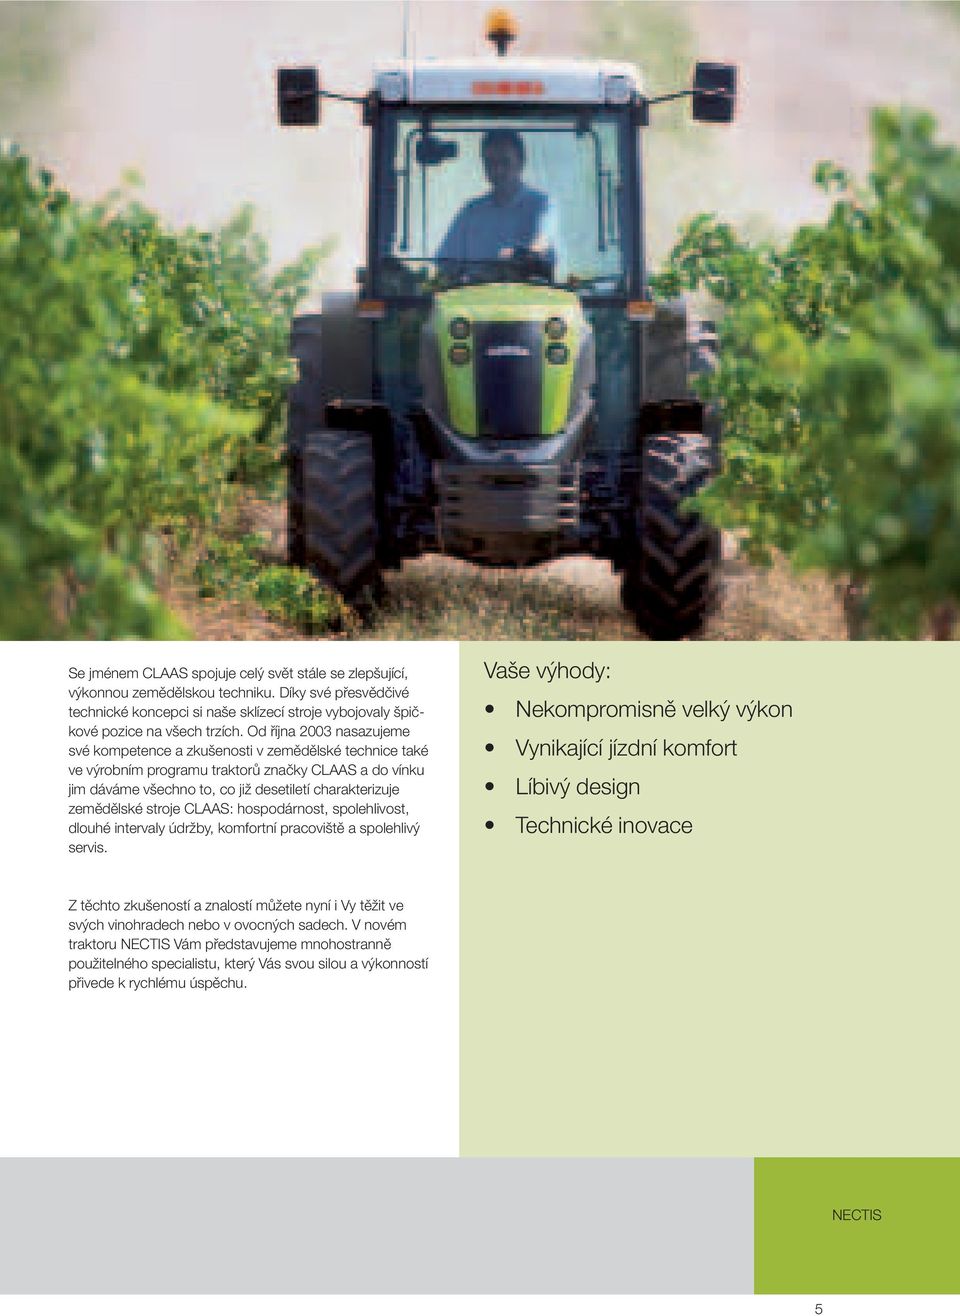 zemědělské stroje CLAAS: hospodárnost, spolehlivost, dlouhé intervaly údržby, komfortní pracoviště a spolehlivý servis.